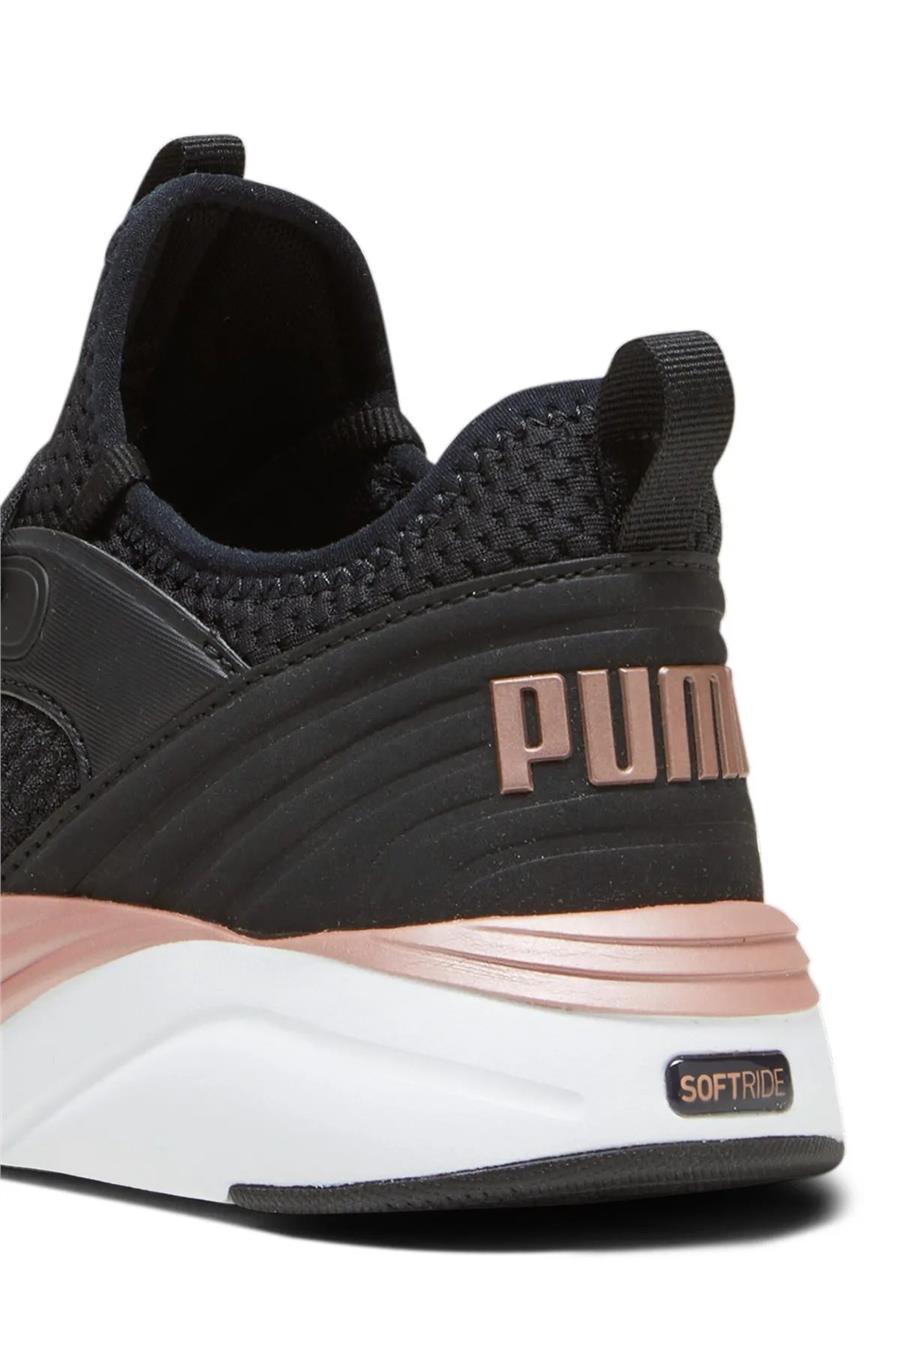 Puma 377580 07 Softrıde Ruby Luxe Wn S Puma Black-Rose Gold Yetişkin Kadın  Koşu Ayakkabısı